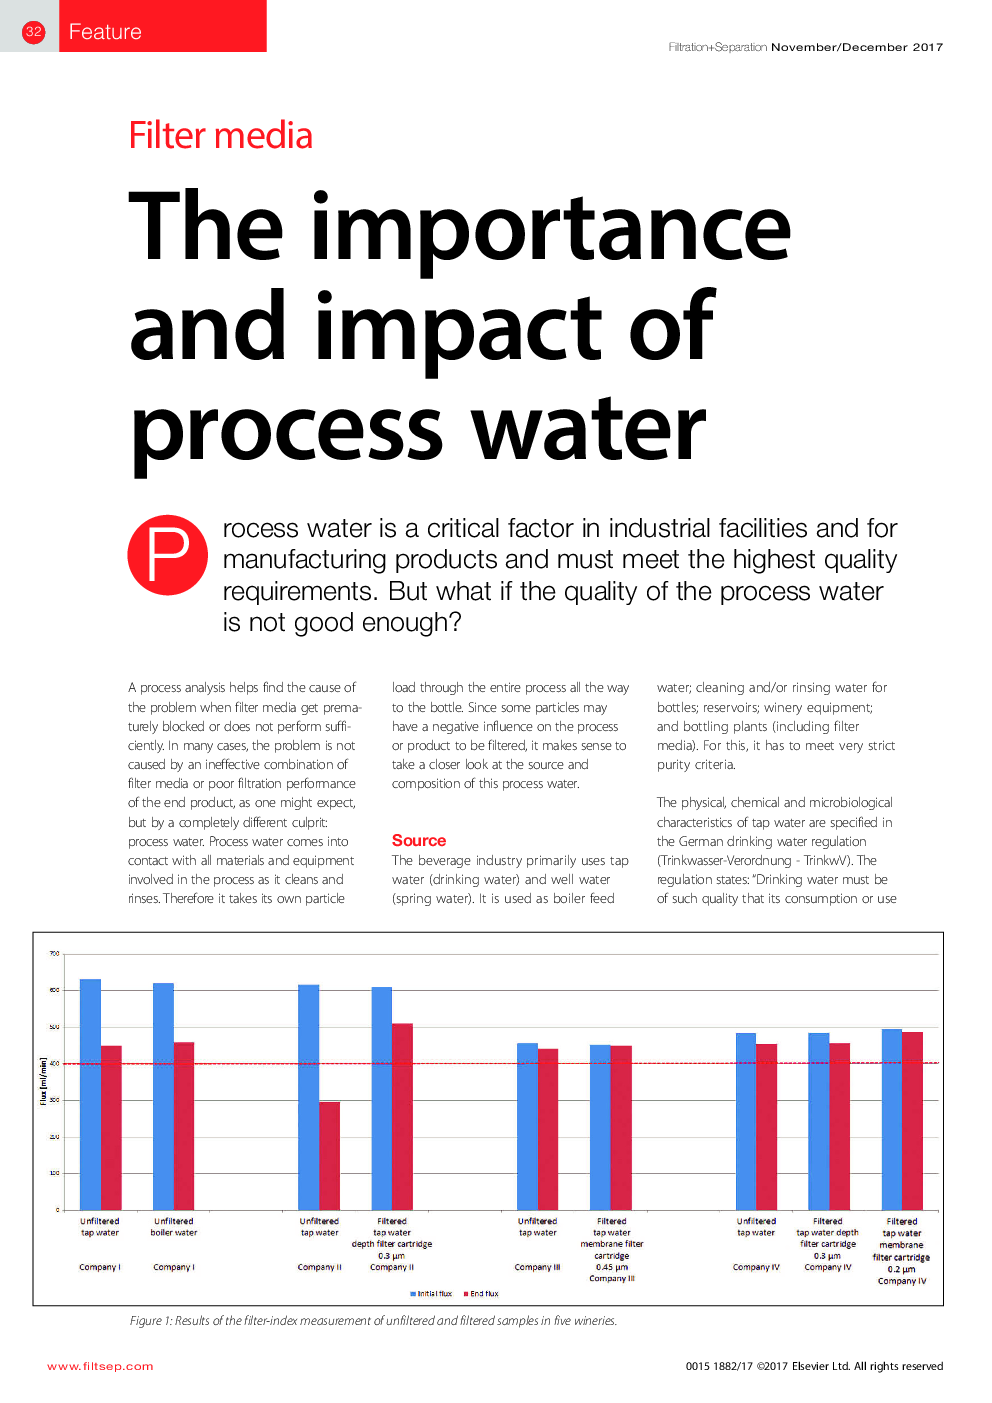 اهمیت و تاثیر آب فرایند 